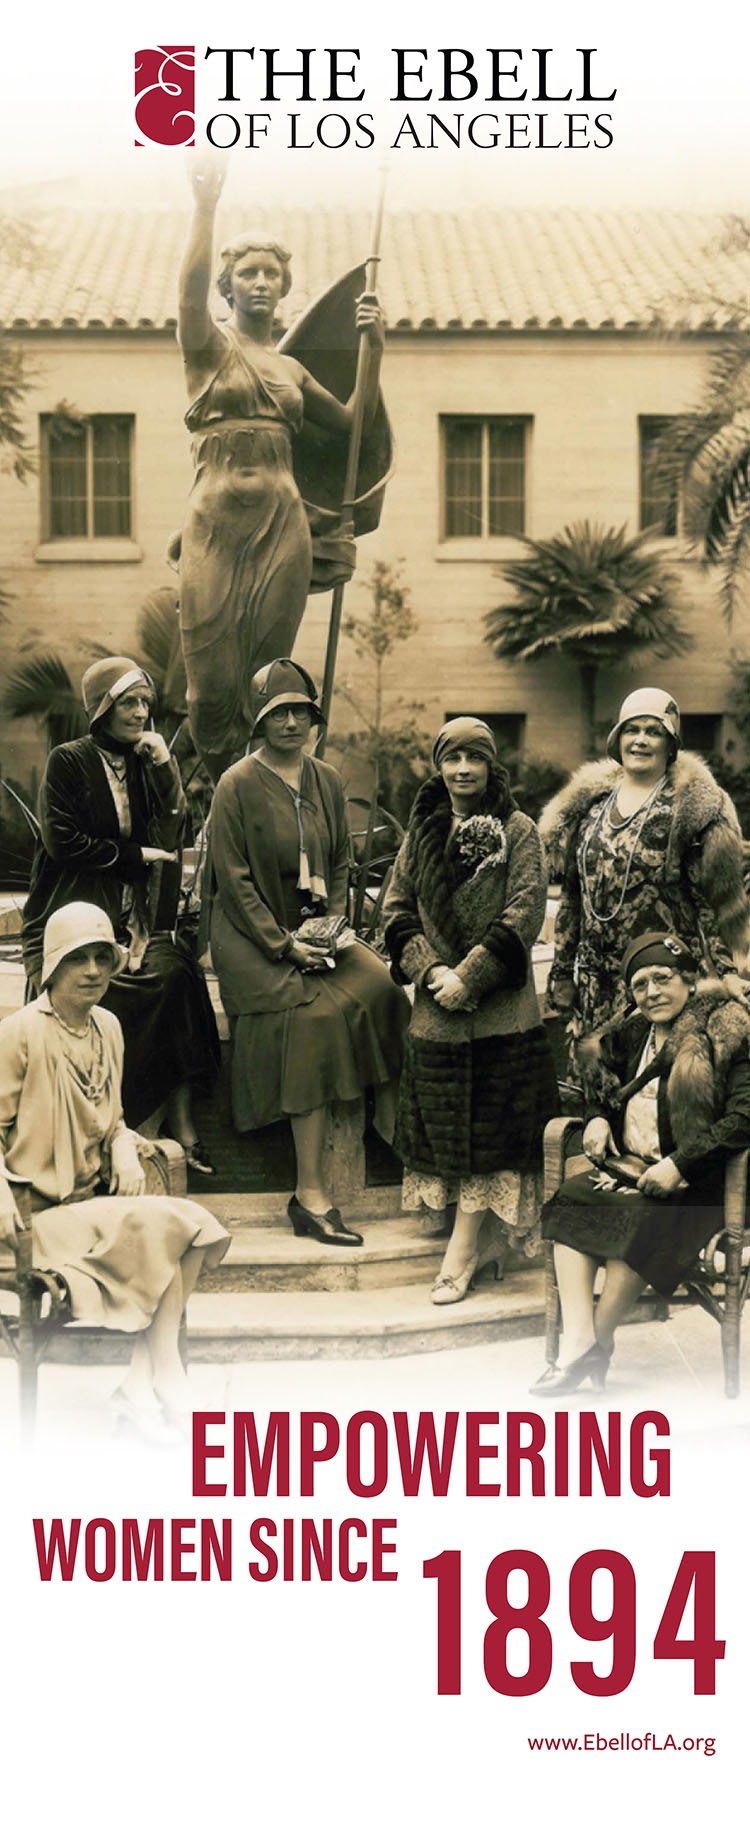 Members circa 1930-35